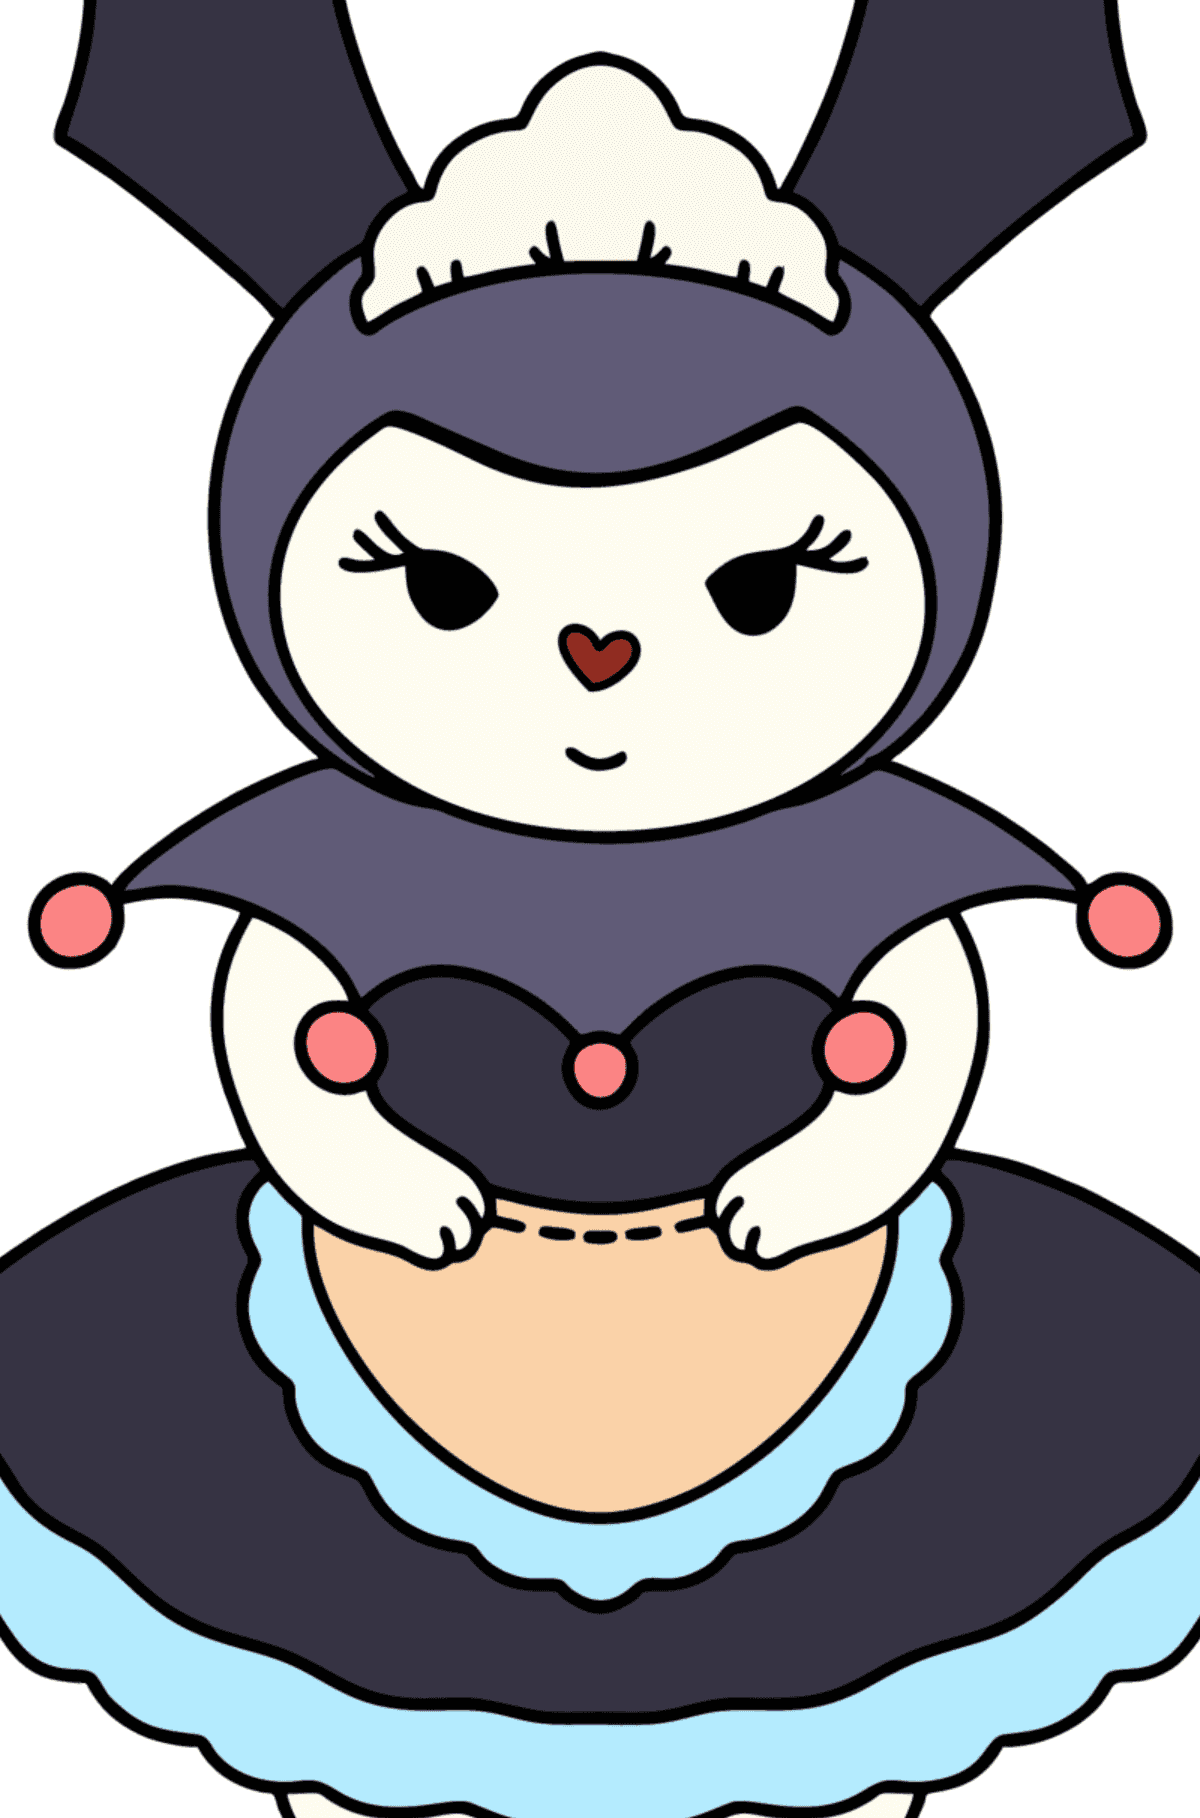 Kolorowanka Hello Kitty Kuromy - Kolorowanie według figur geometrycznych dla dzieci